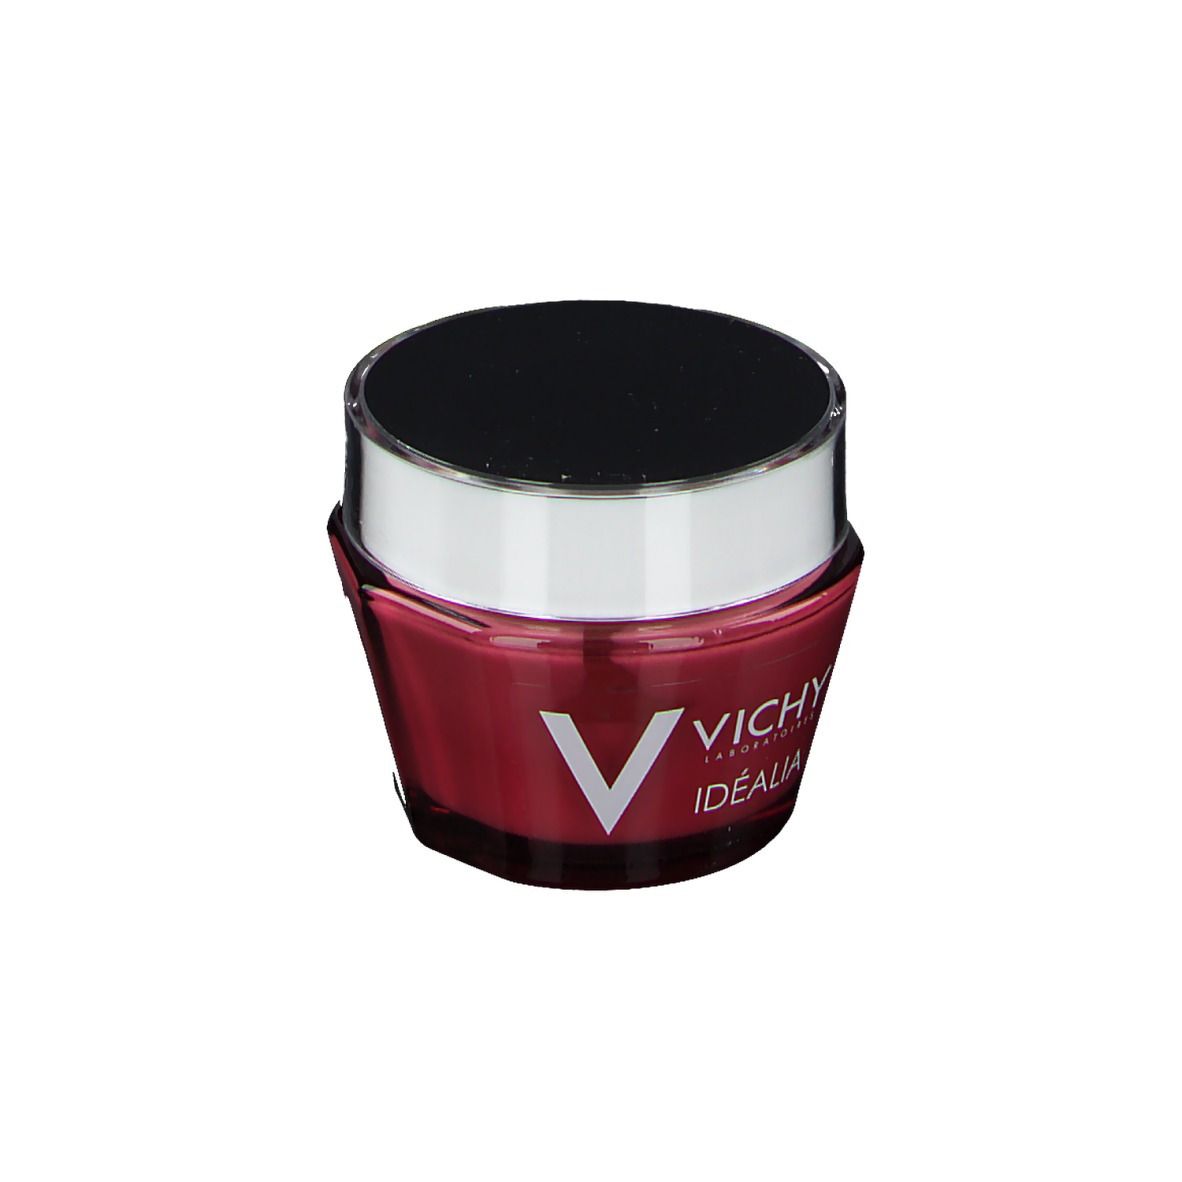 Vichy Idealia Crema Viso Giorno per pelle normale e mista 50 ml